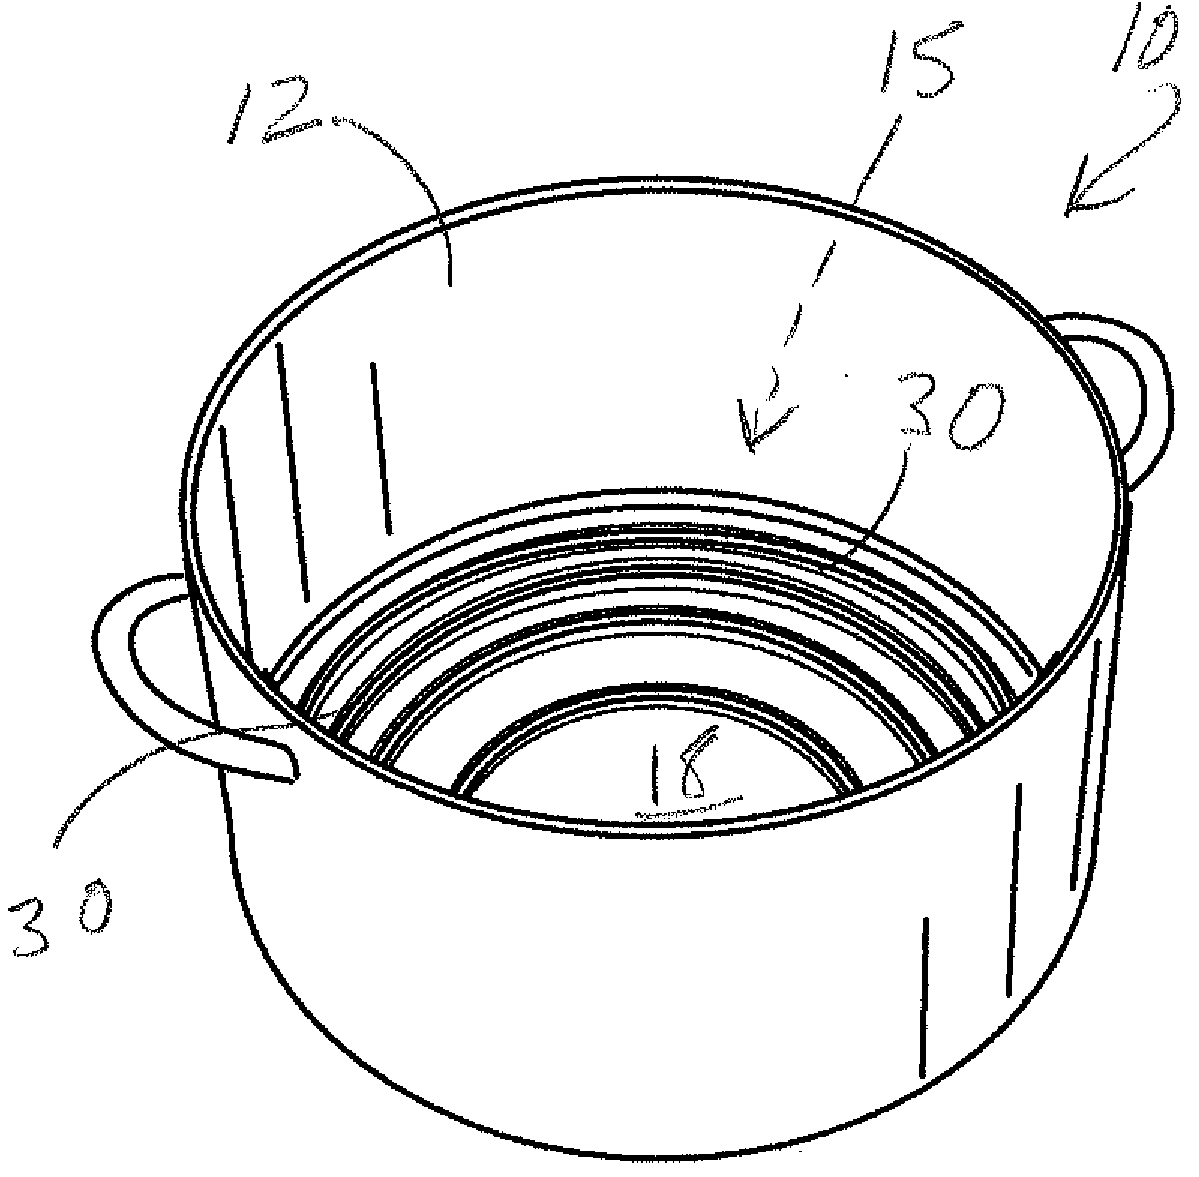 Gas burner boiling pot